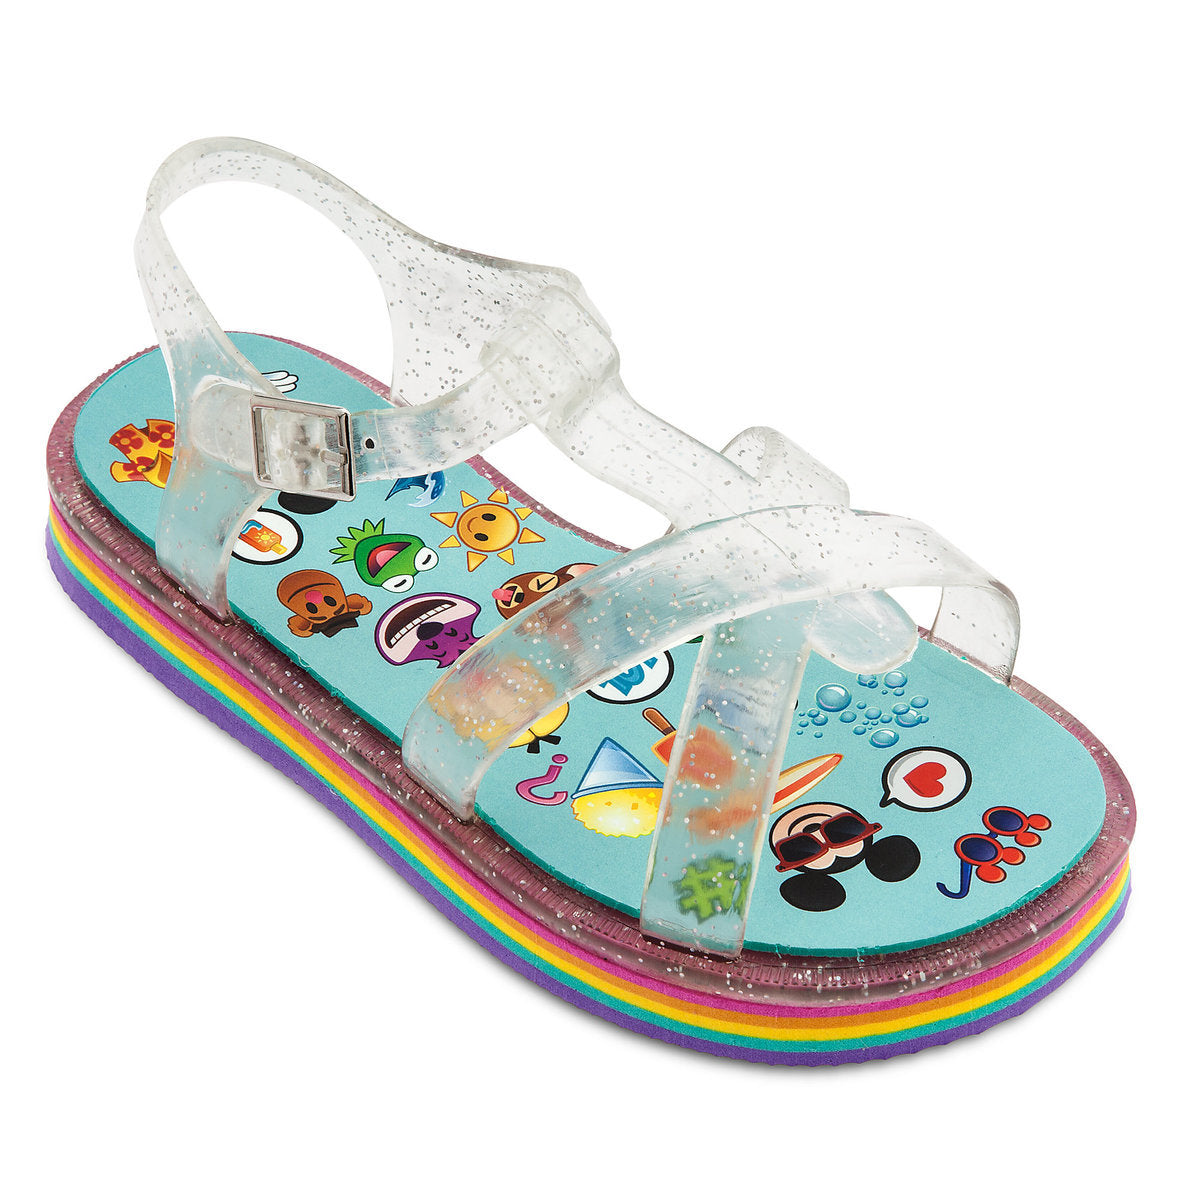 Disney's Emoji Flip Flop Sandals for Kids